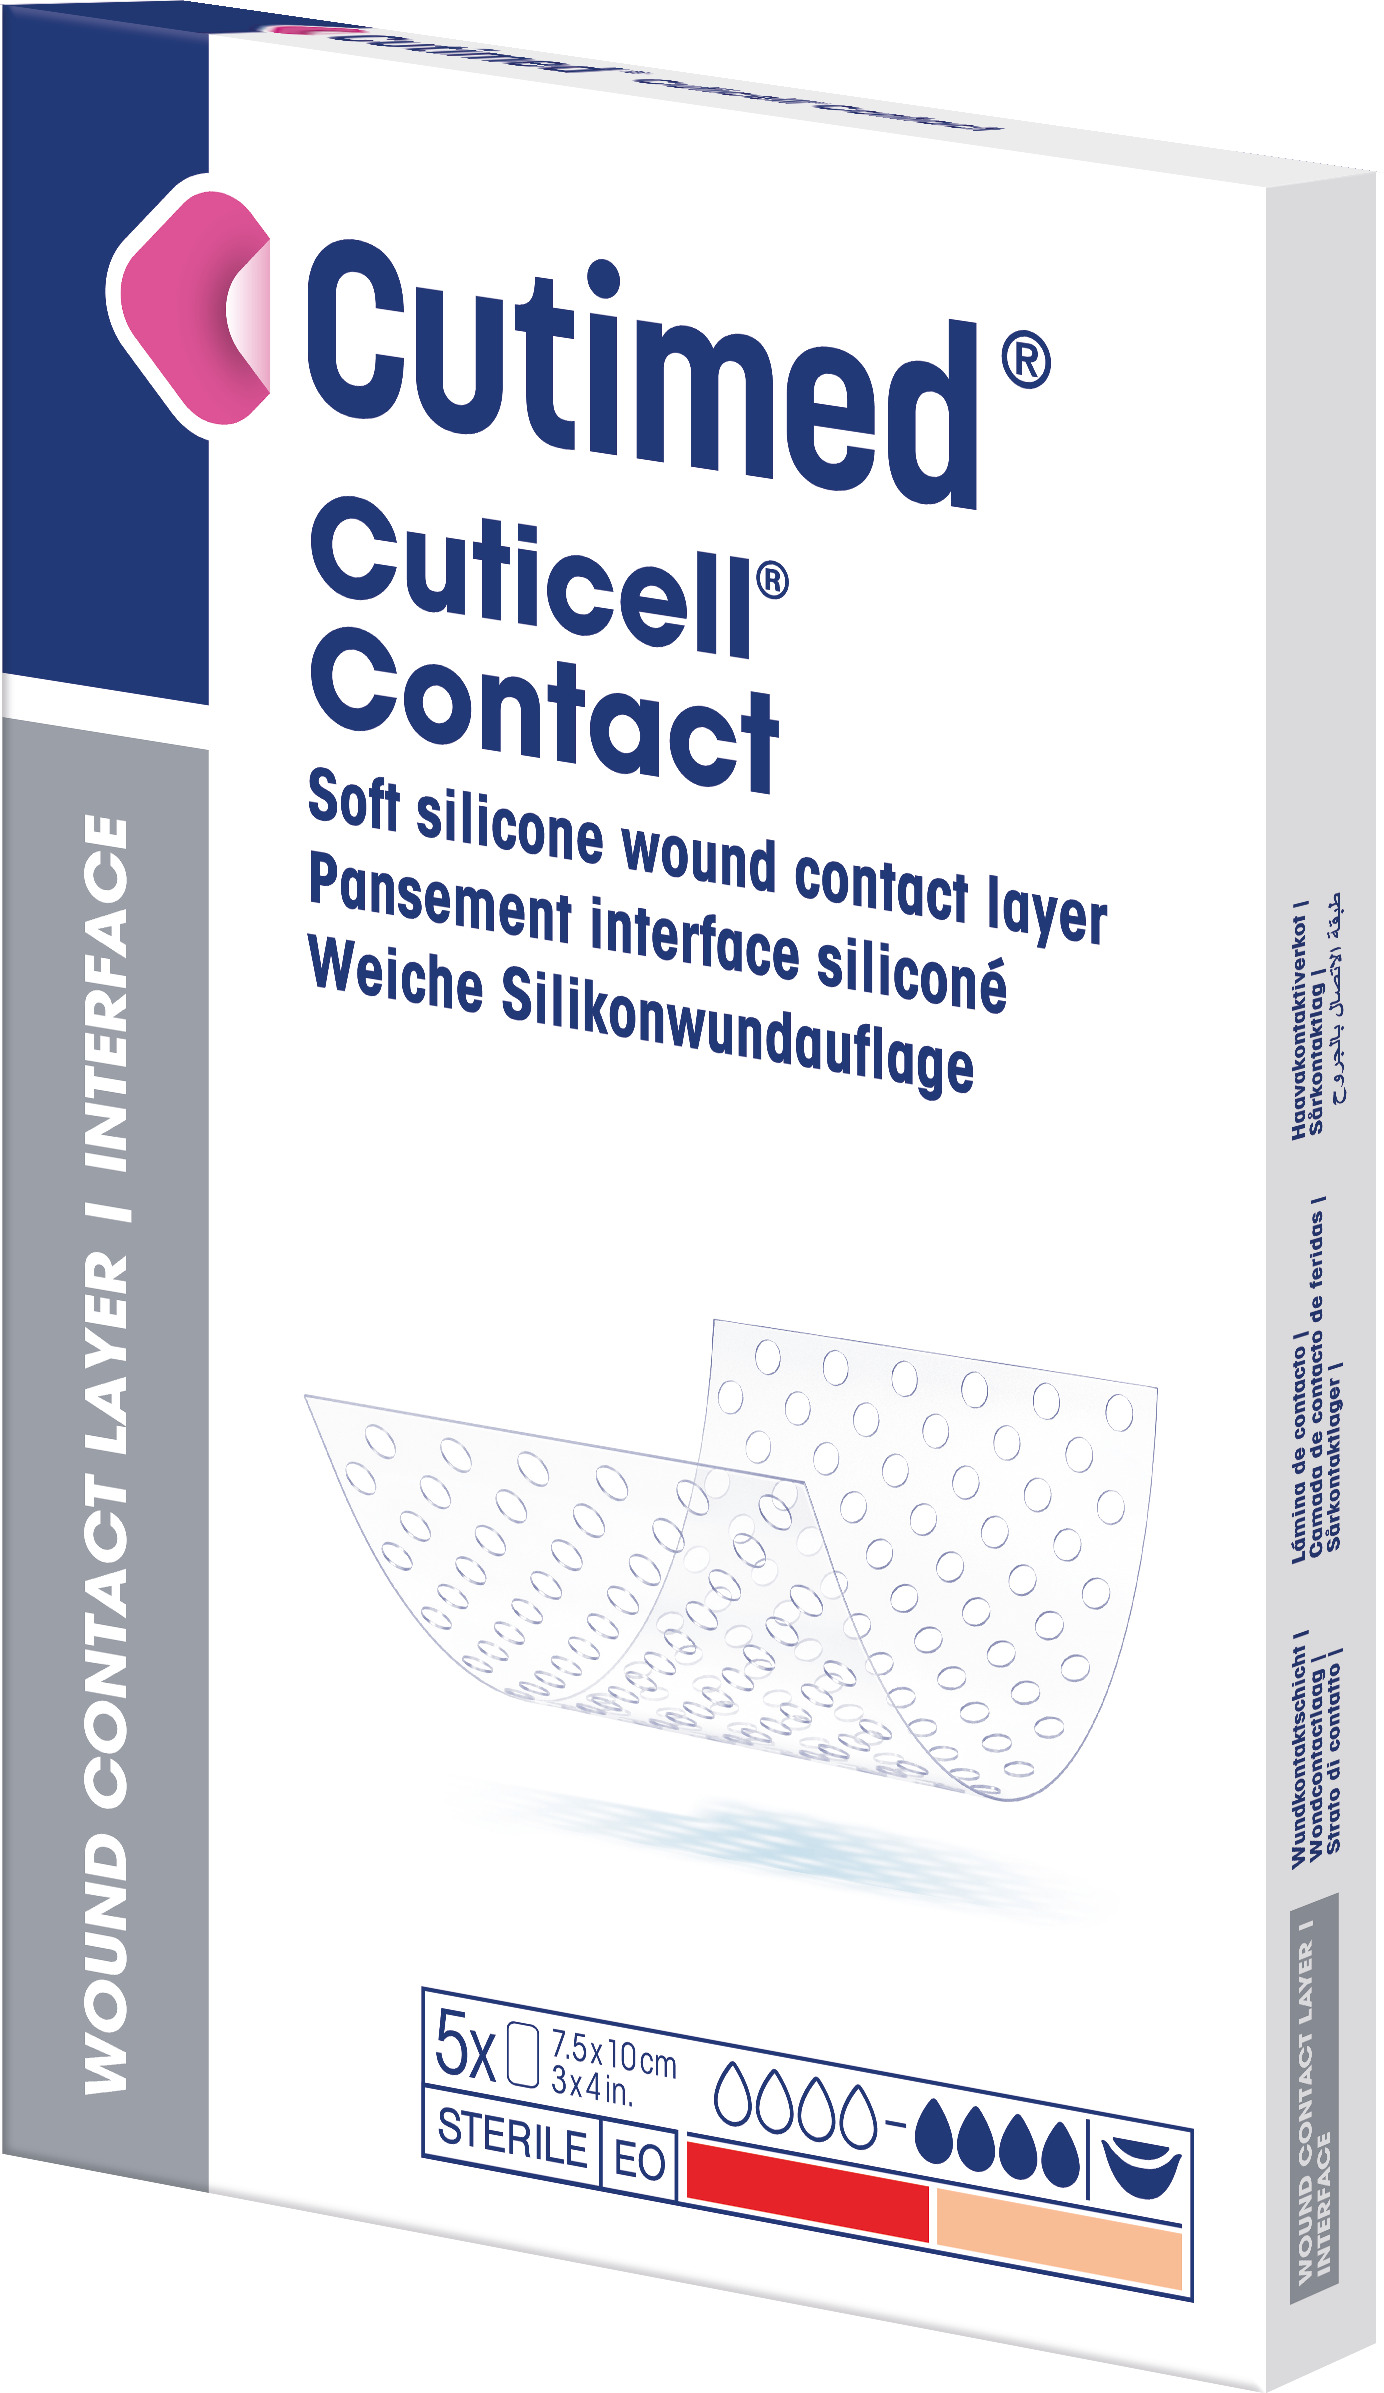 Cuticell Contact pansement silicone plaie 5x7.5cm 5 pce à petit